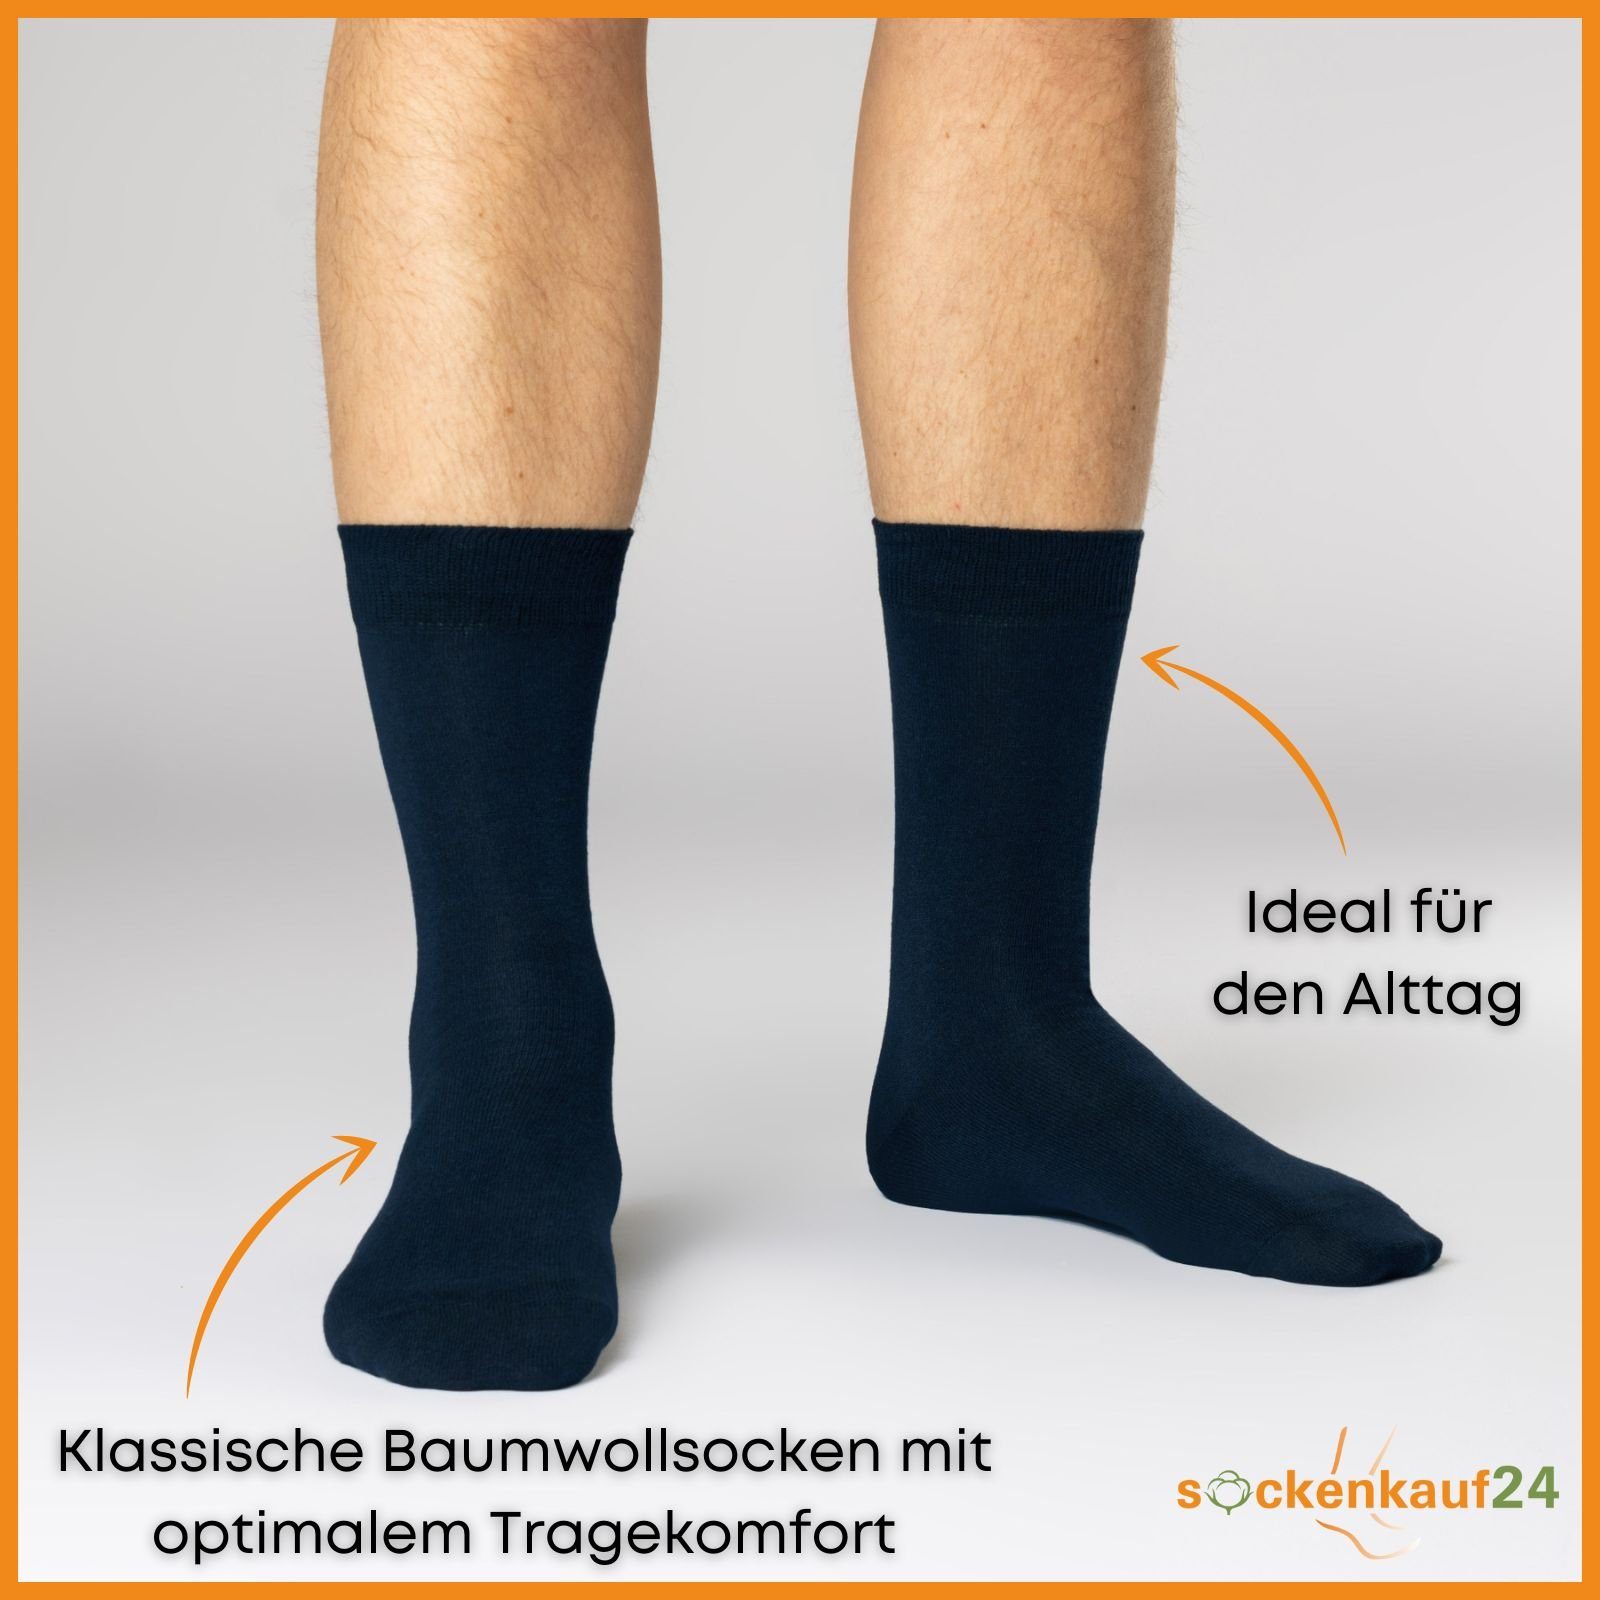 & Paar 12 Strümpfe Blaumix Komfortbund sockenkauf24 mit Damen Herren Socken Baumwollsocken